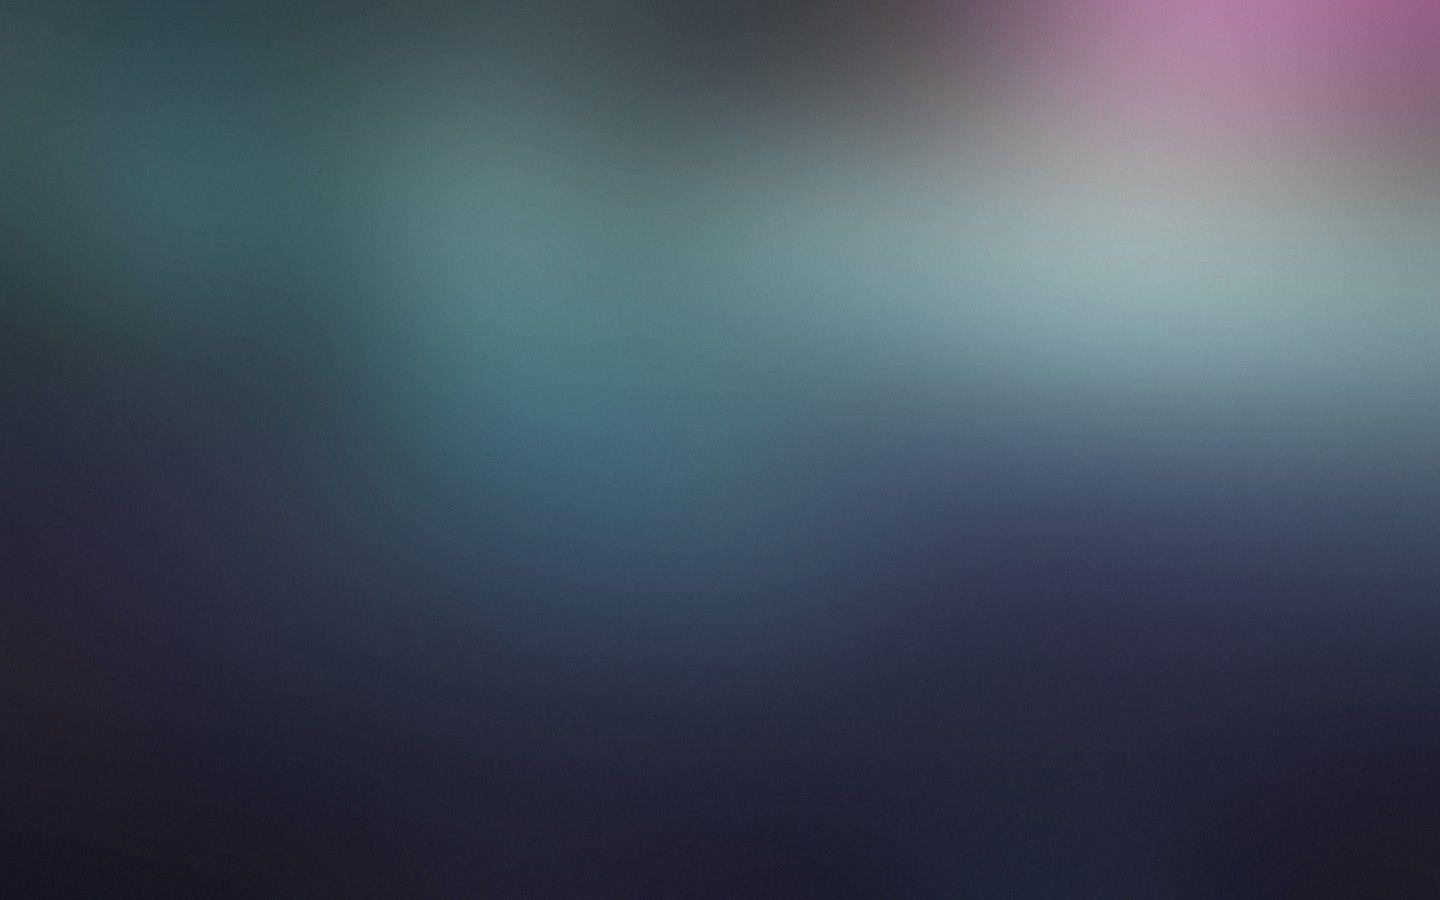 Download 1440x900 Gradient, Blur Wallpaper for MacBook Pro 15 inch